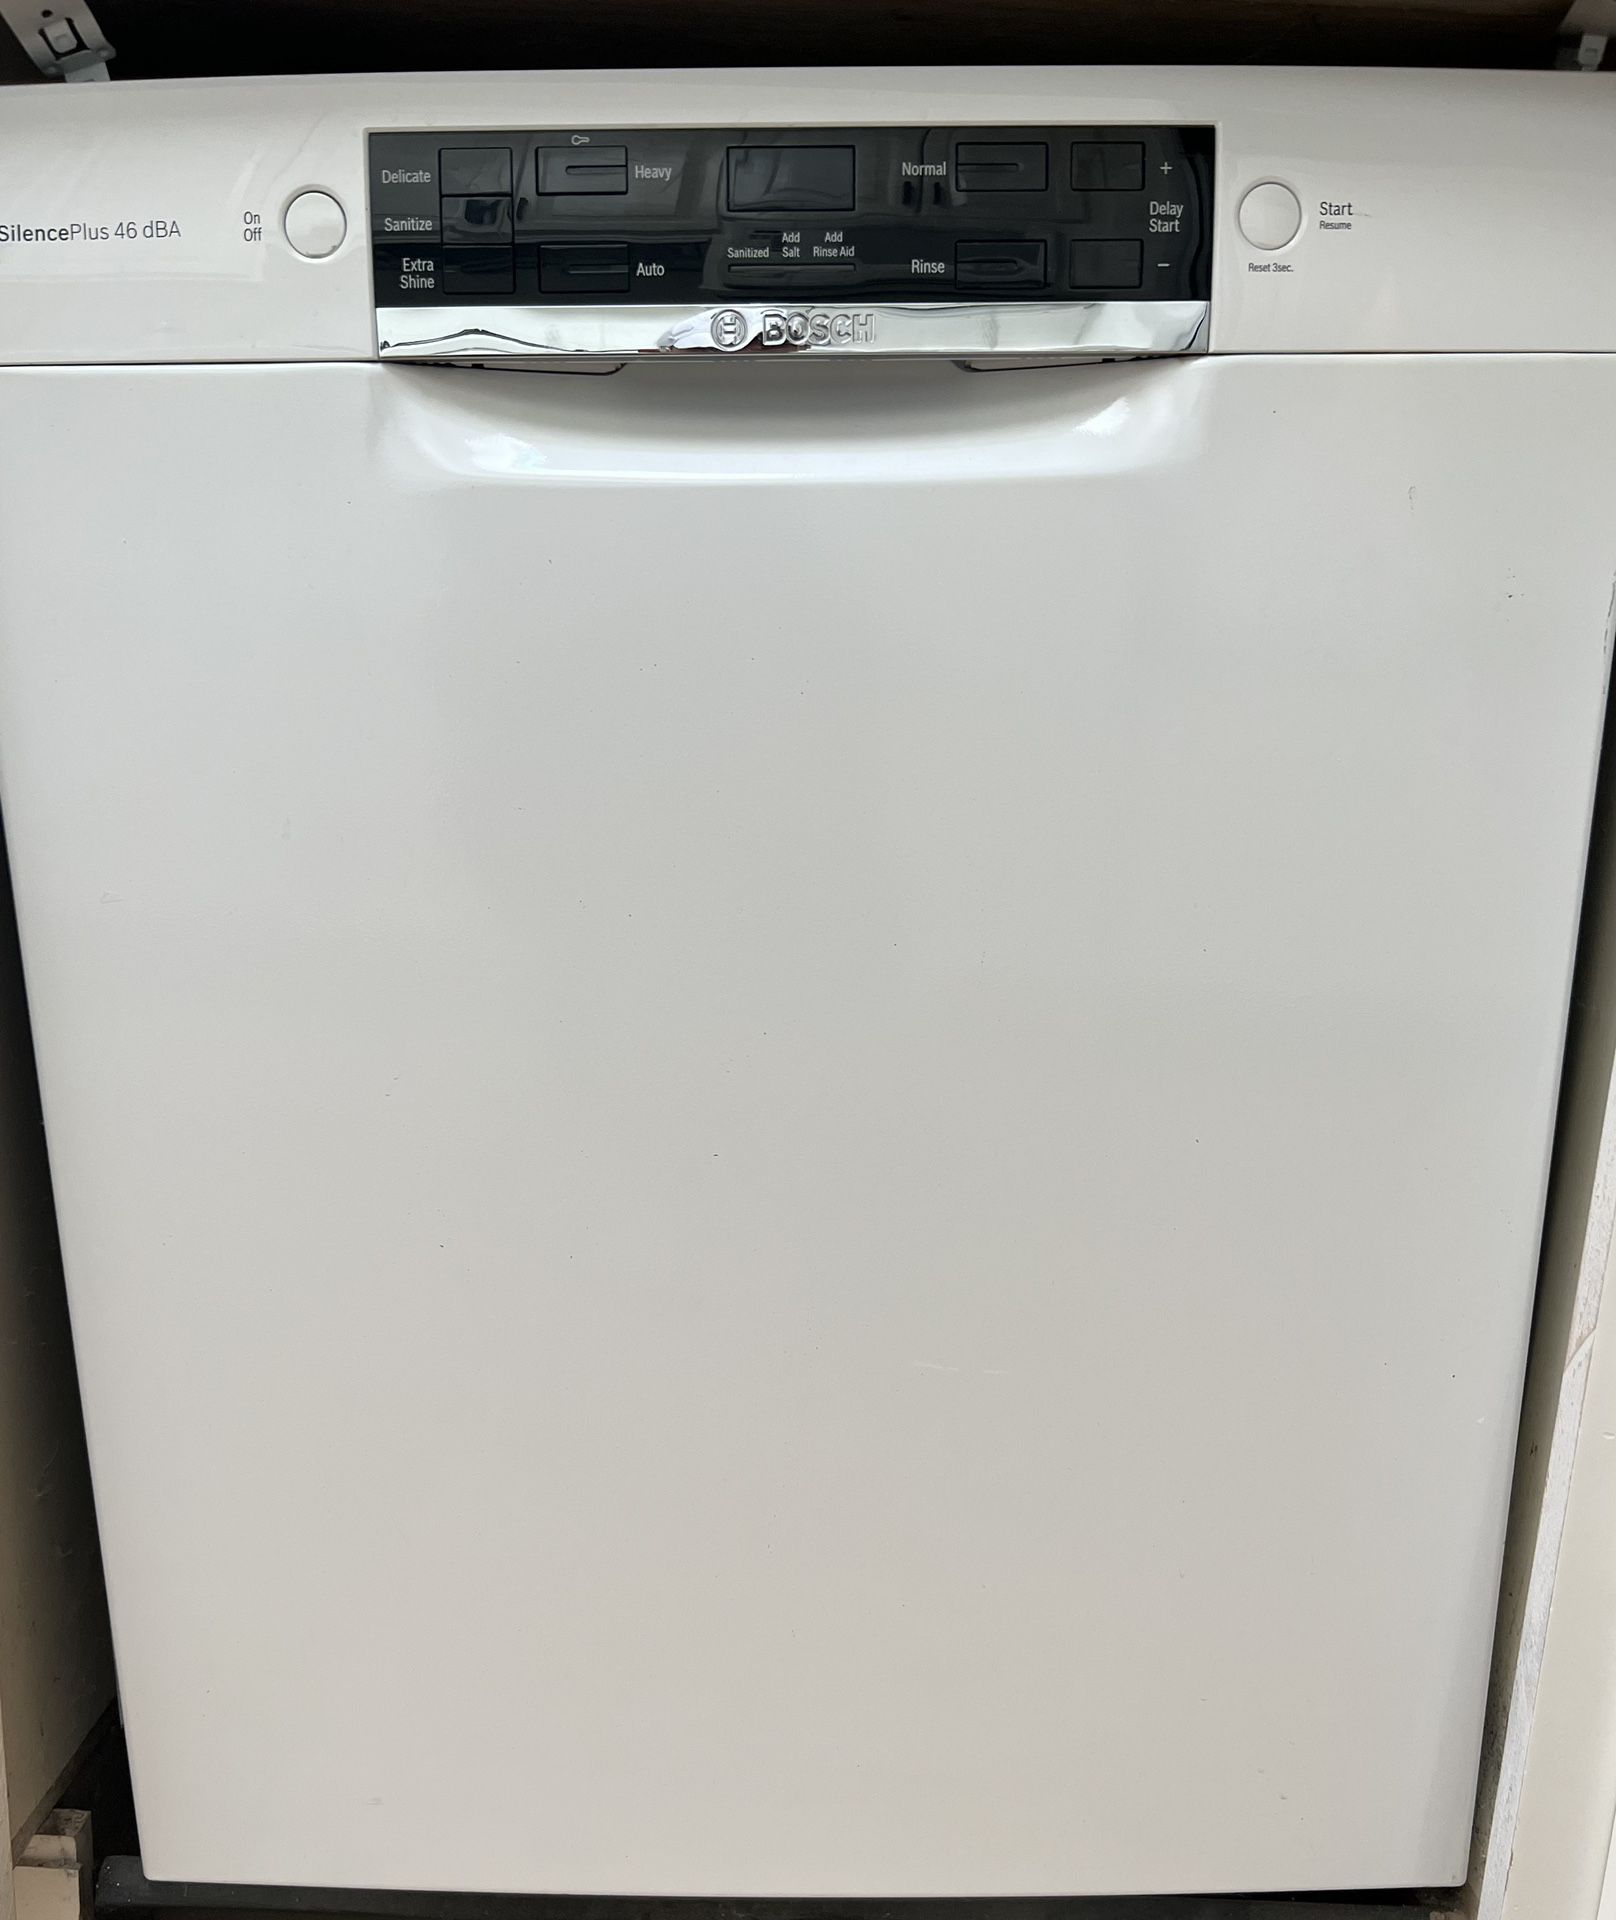 Dishwasher - New